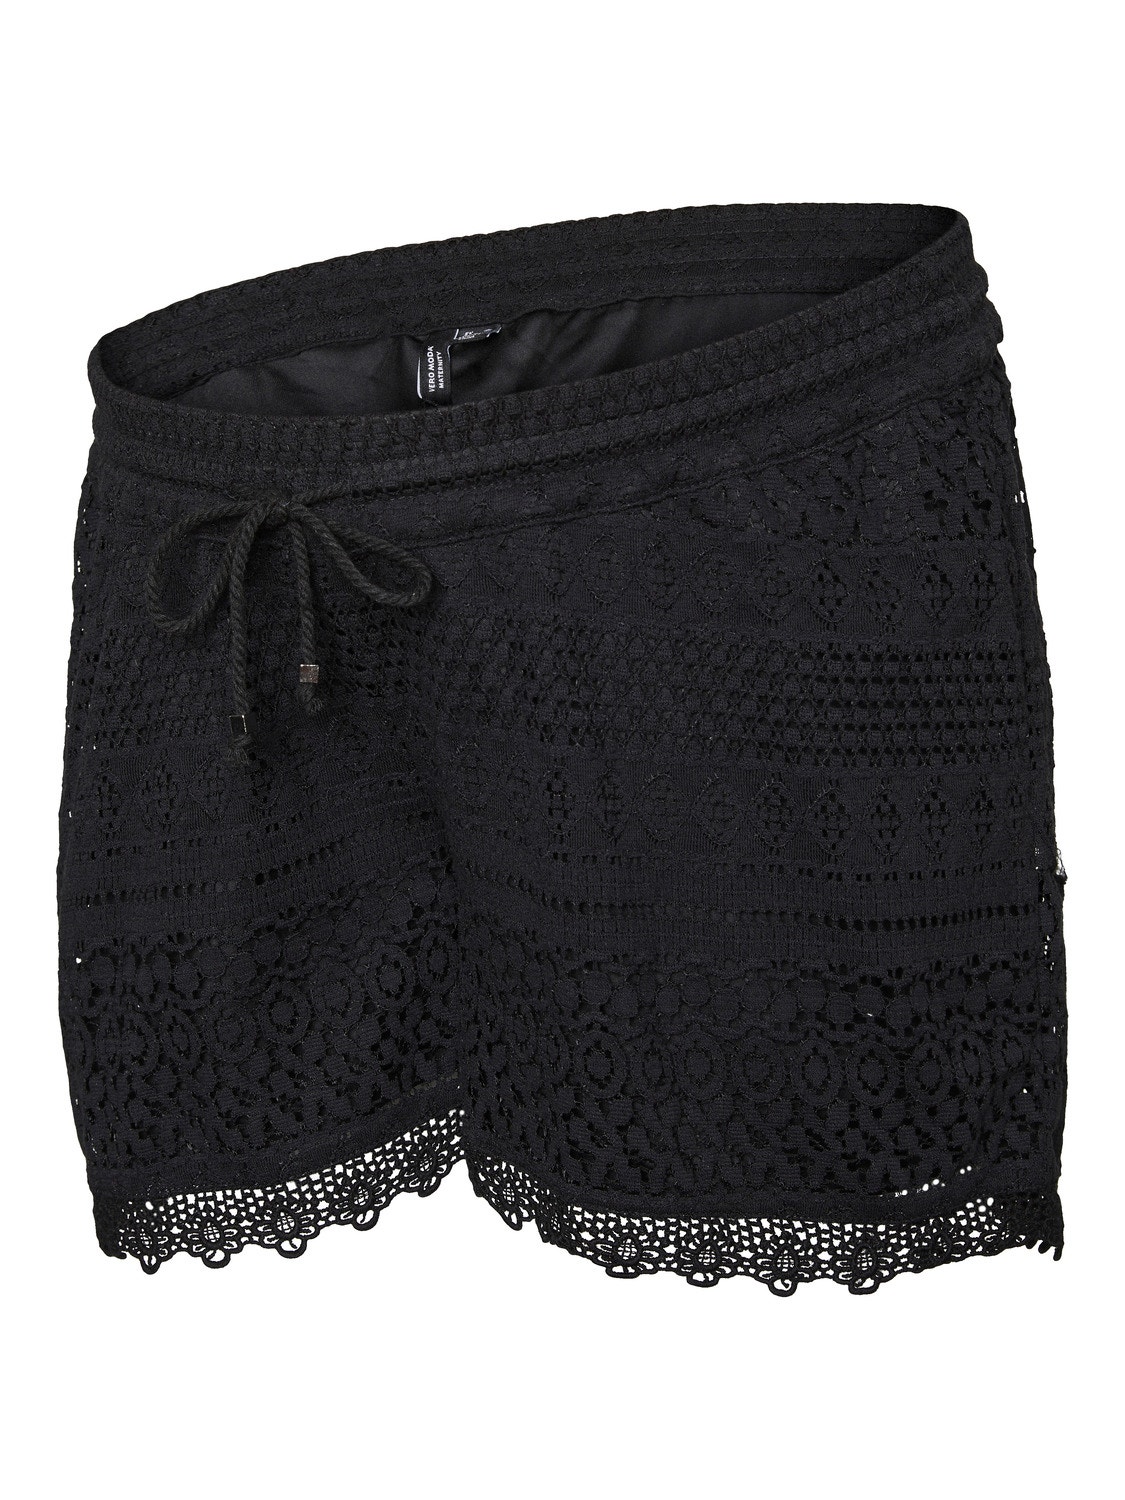 MAMA.LICIOUS Umstands-shorts -Black - 20019417